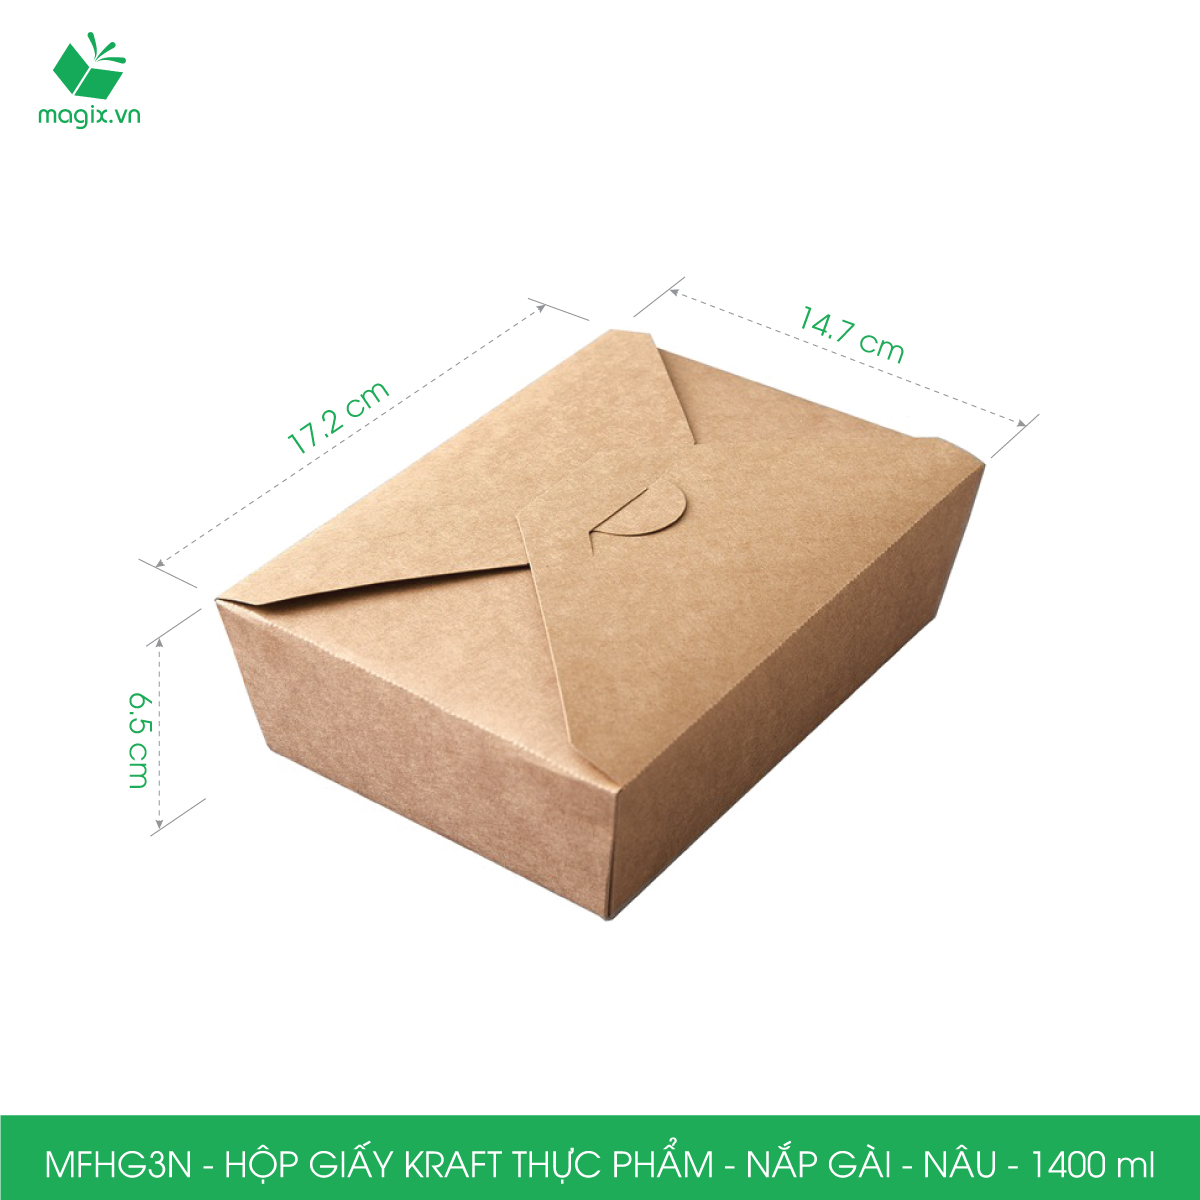 MFHG3N - 50 hộp giấy kraft thực phẩm 1400ml, hộp giấy nắp gập màu nâu đựng thức ăn, hộp giấy nắp gài gói đồ ăn mang đi 